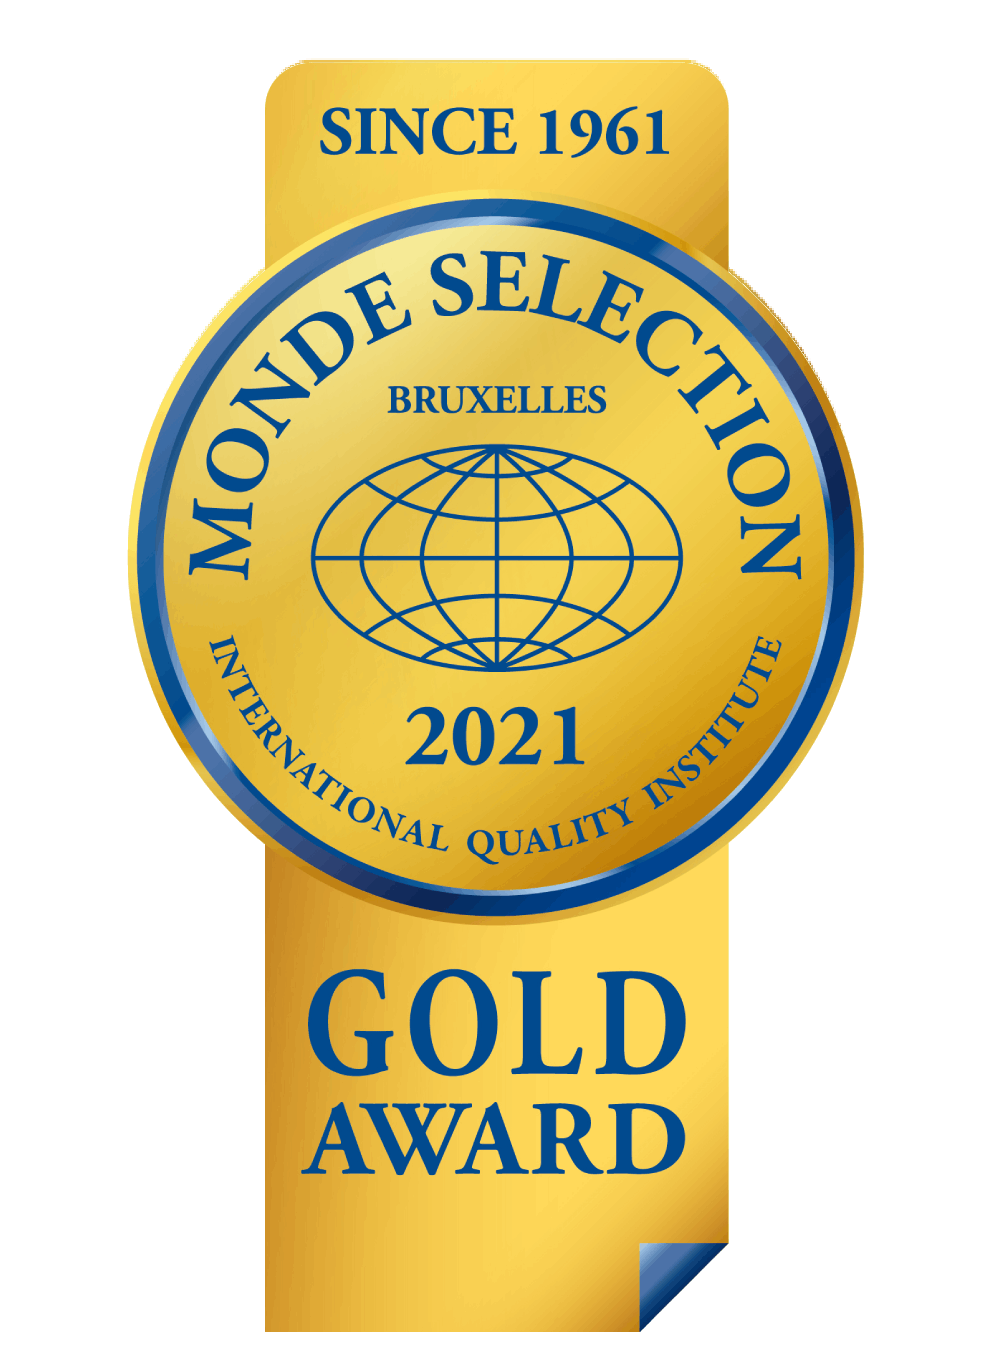 មេដាយមាសពានរង្វាន់ Monde Selection ឆ្នាំ២០២១